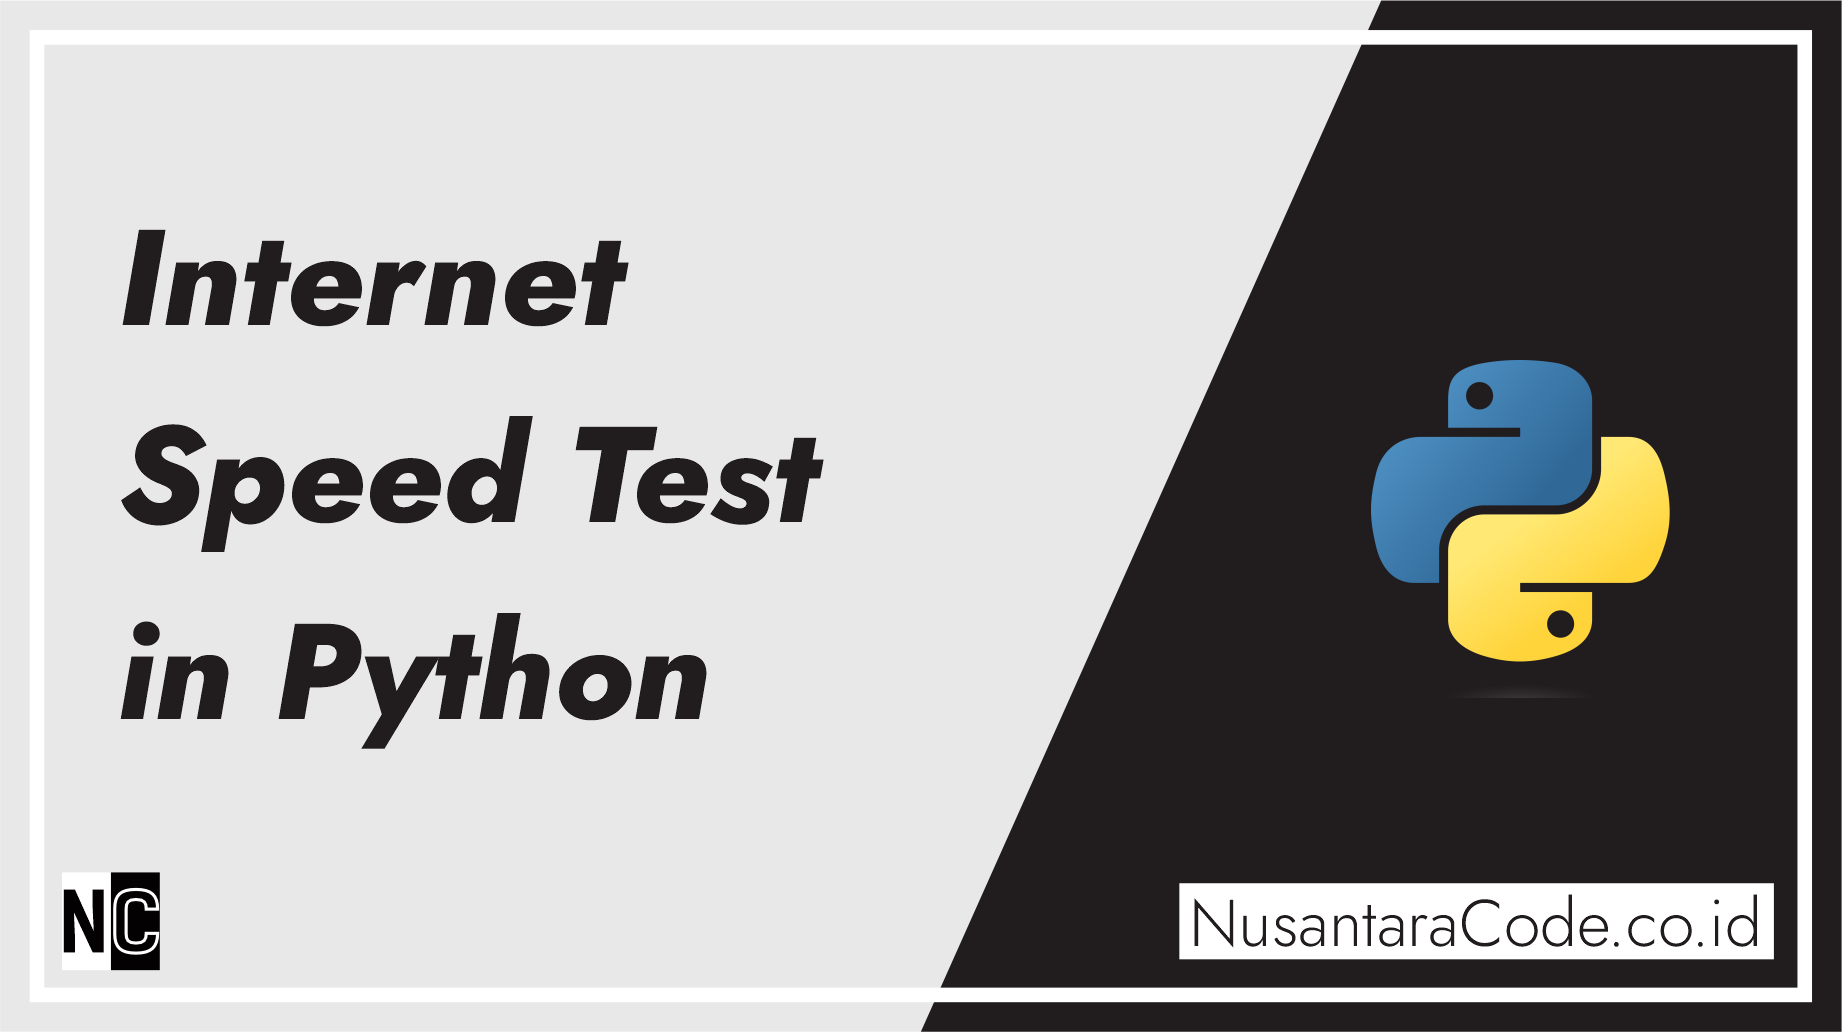 Internet Speed Test in Python